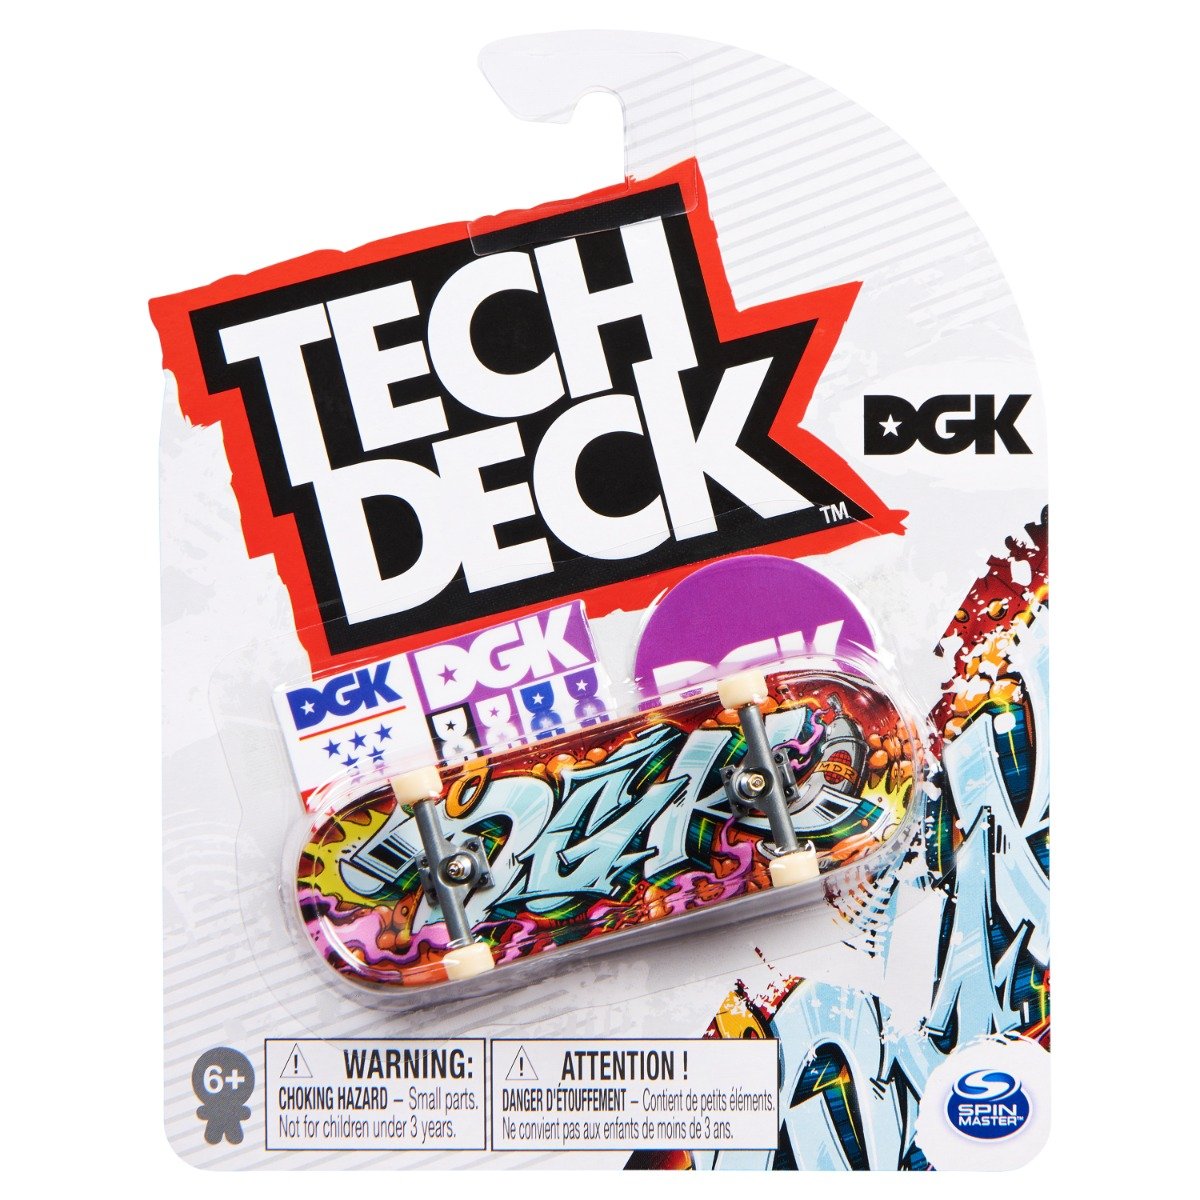 Mini placa skateboard Tech Deck, DGK, 20141233 20141233